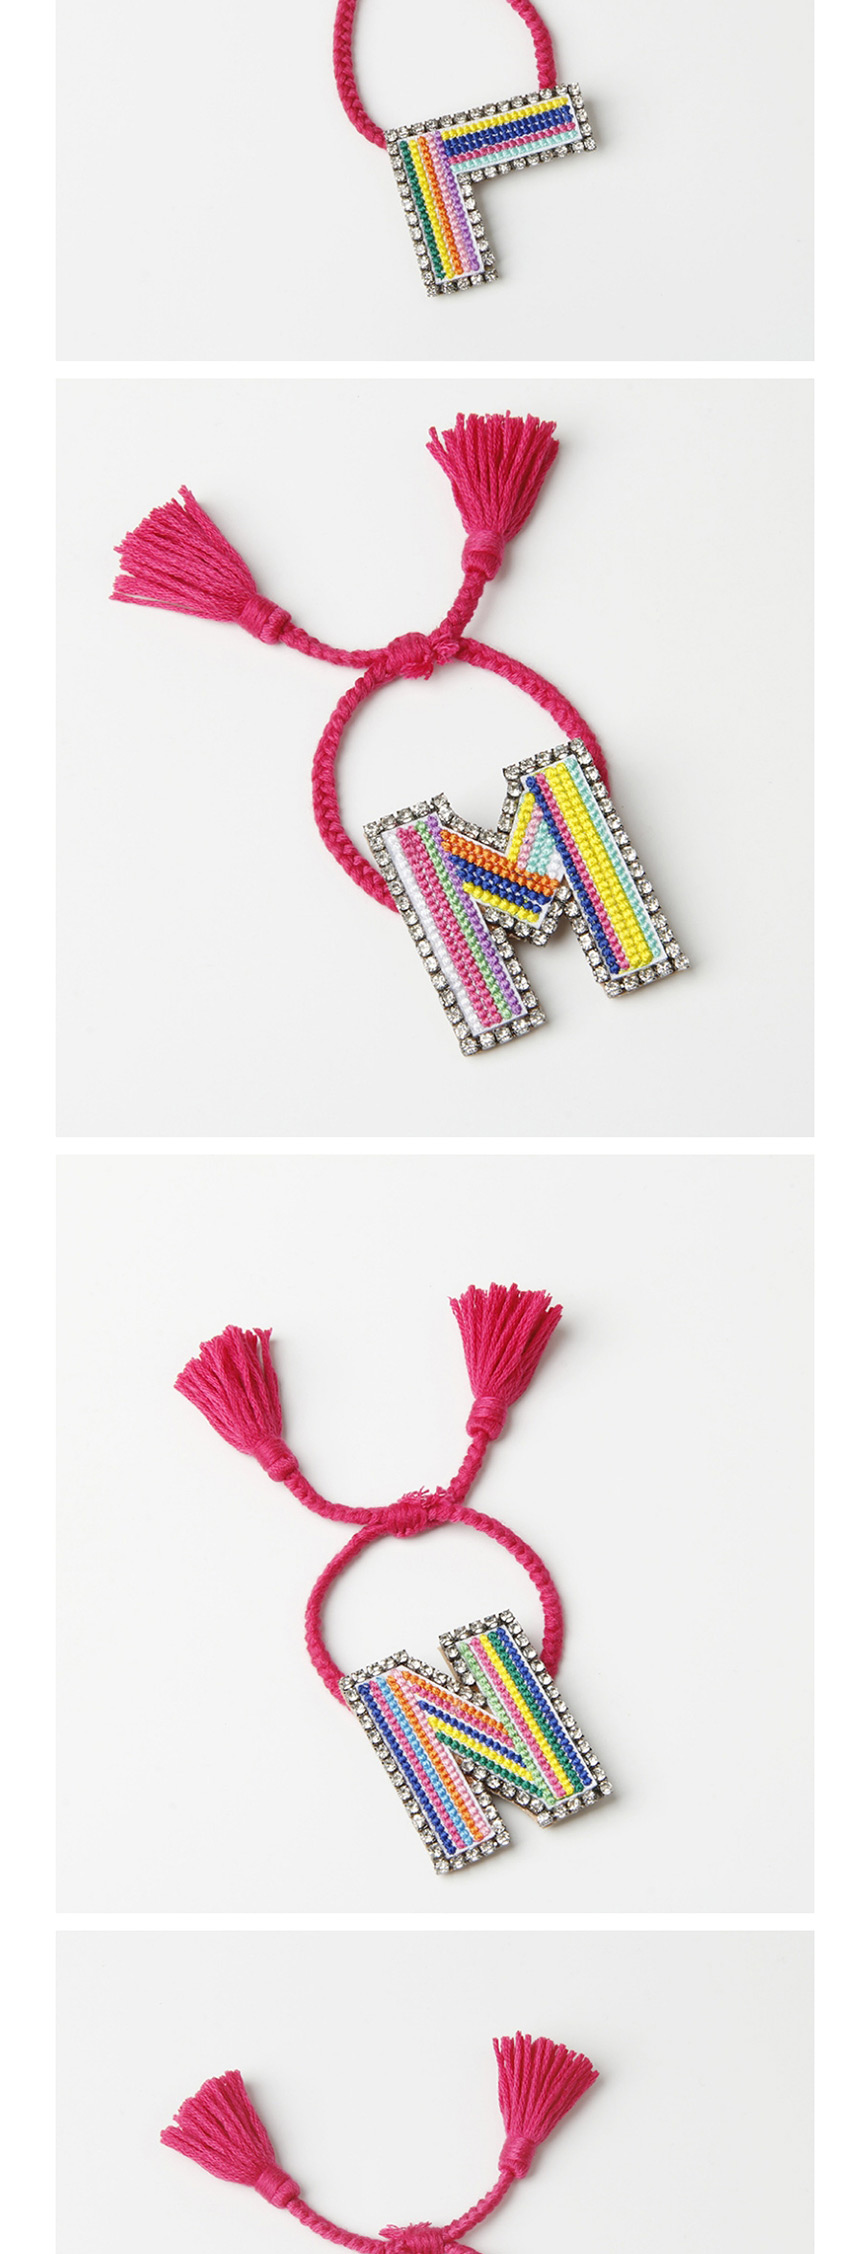 Fashion F Color Embroidered Woven Adjustable Crystal Alphabet Bracelet,Fashion Bracelets